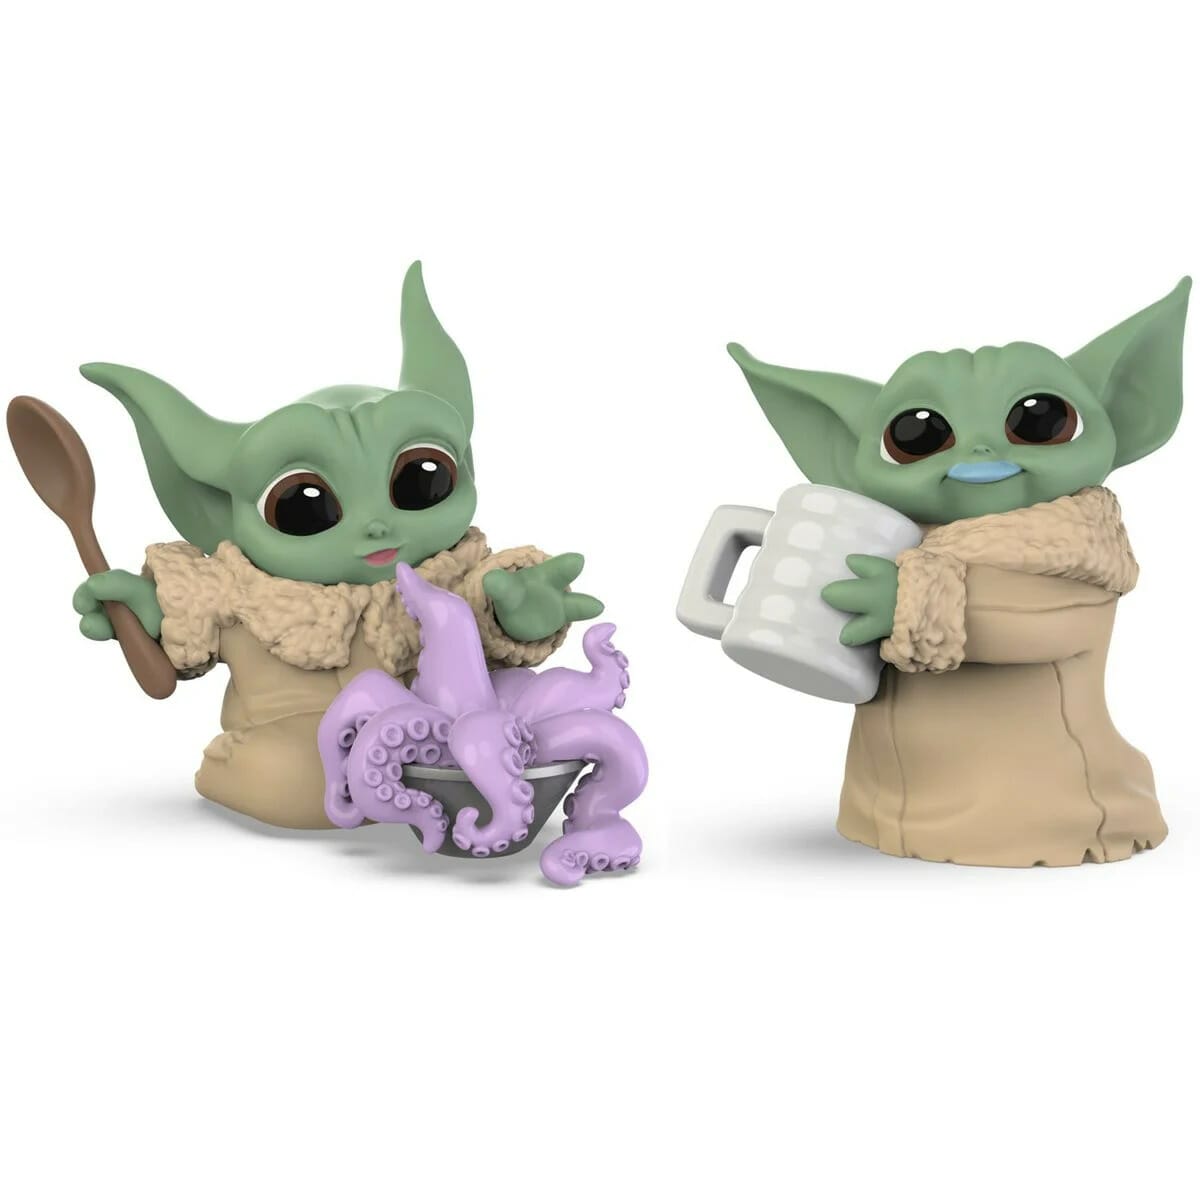 Baby Yoda models